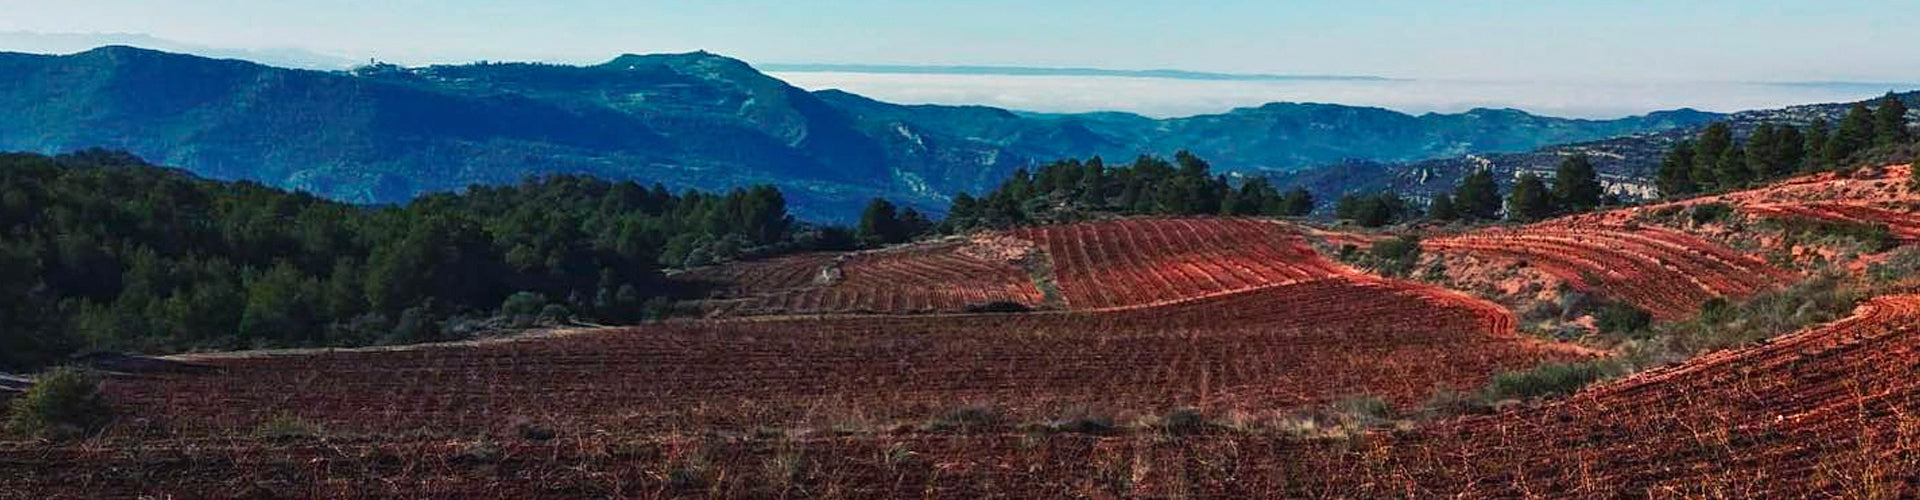 Terroir Sense Fronteres Vineyard in DO Montsant, Spain